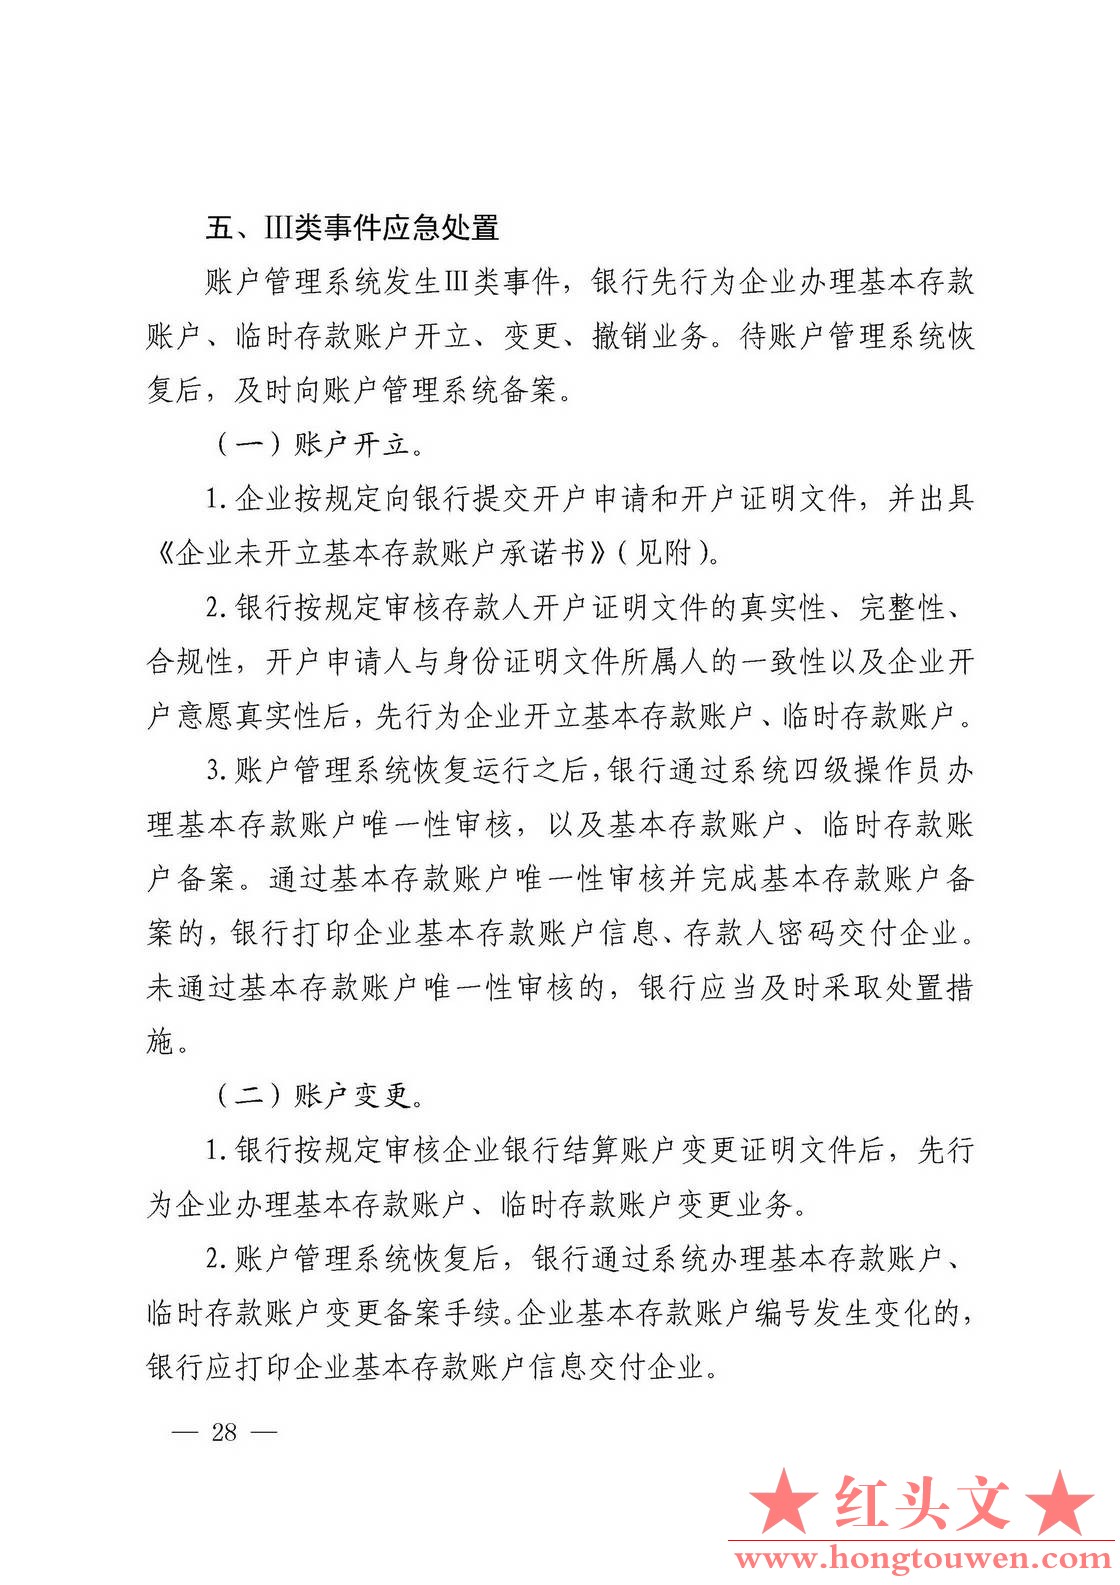 银发[2019]41号-中国人民银行关于取消企业银行账户许可的通知_页面_28.jpg.jpg